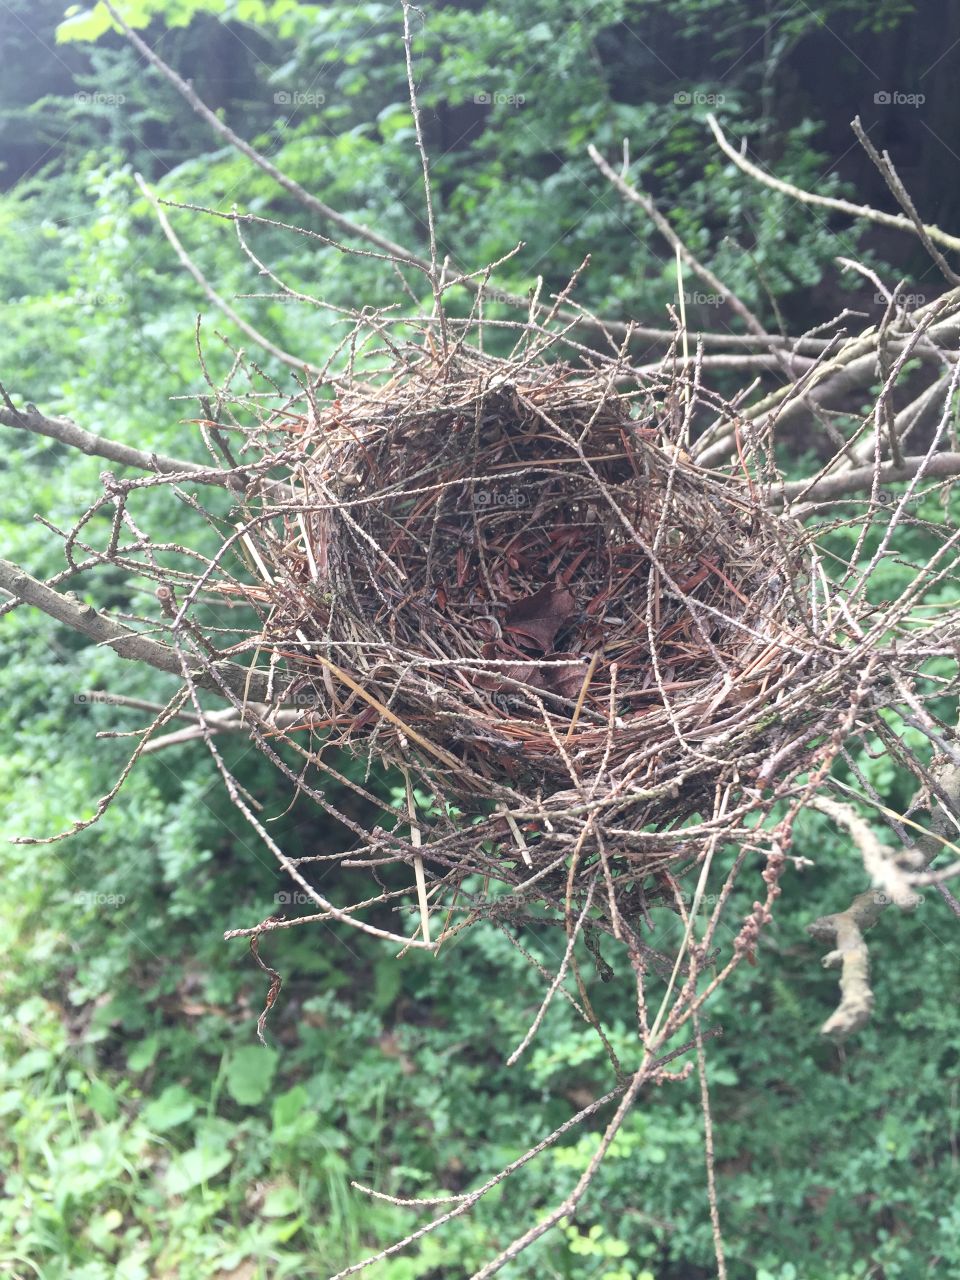 Abandoned nest